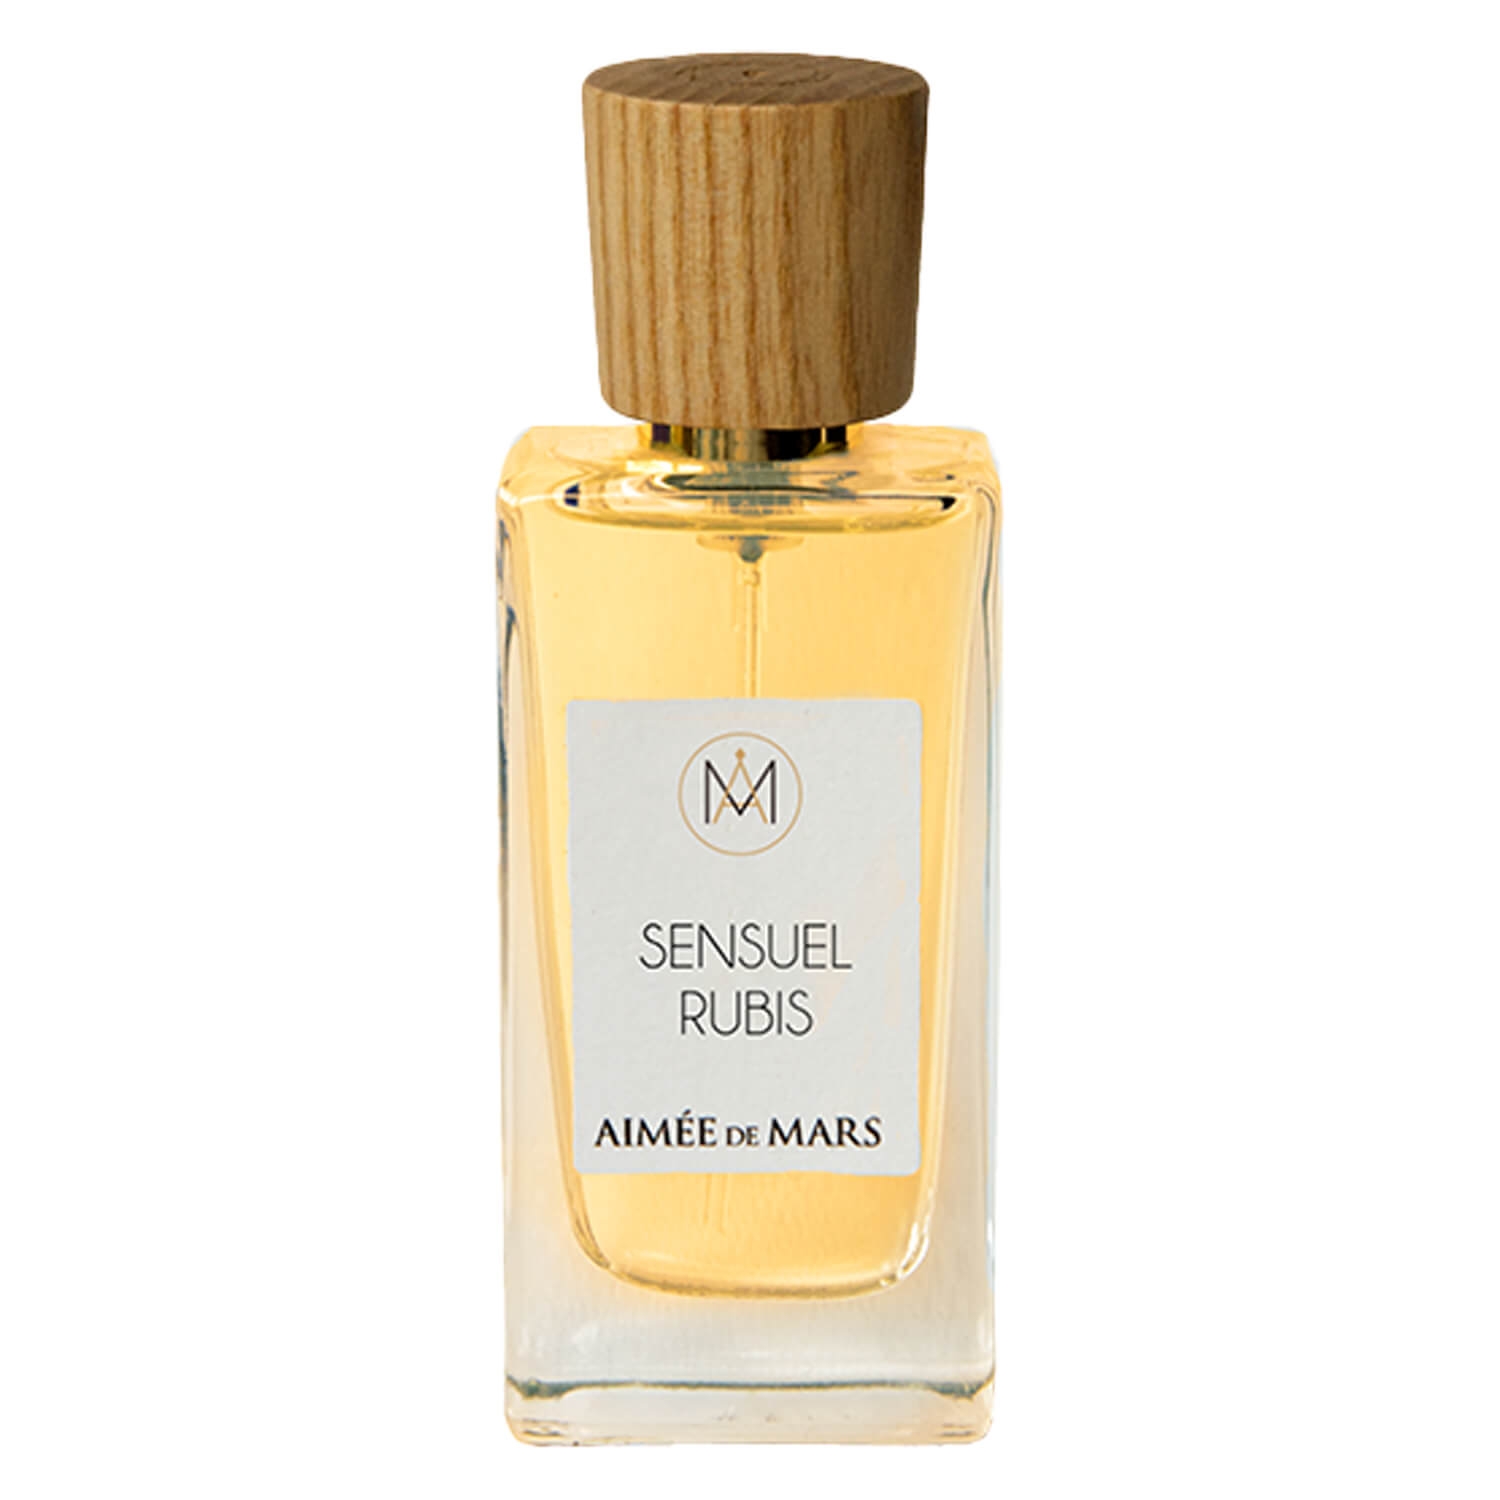 Product image from Aimée de Mars - Sensuel Rubis Eau de Parfum